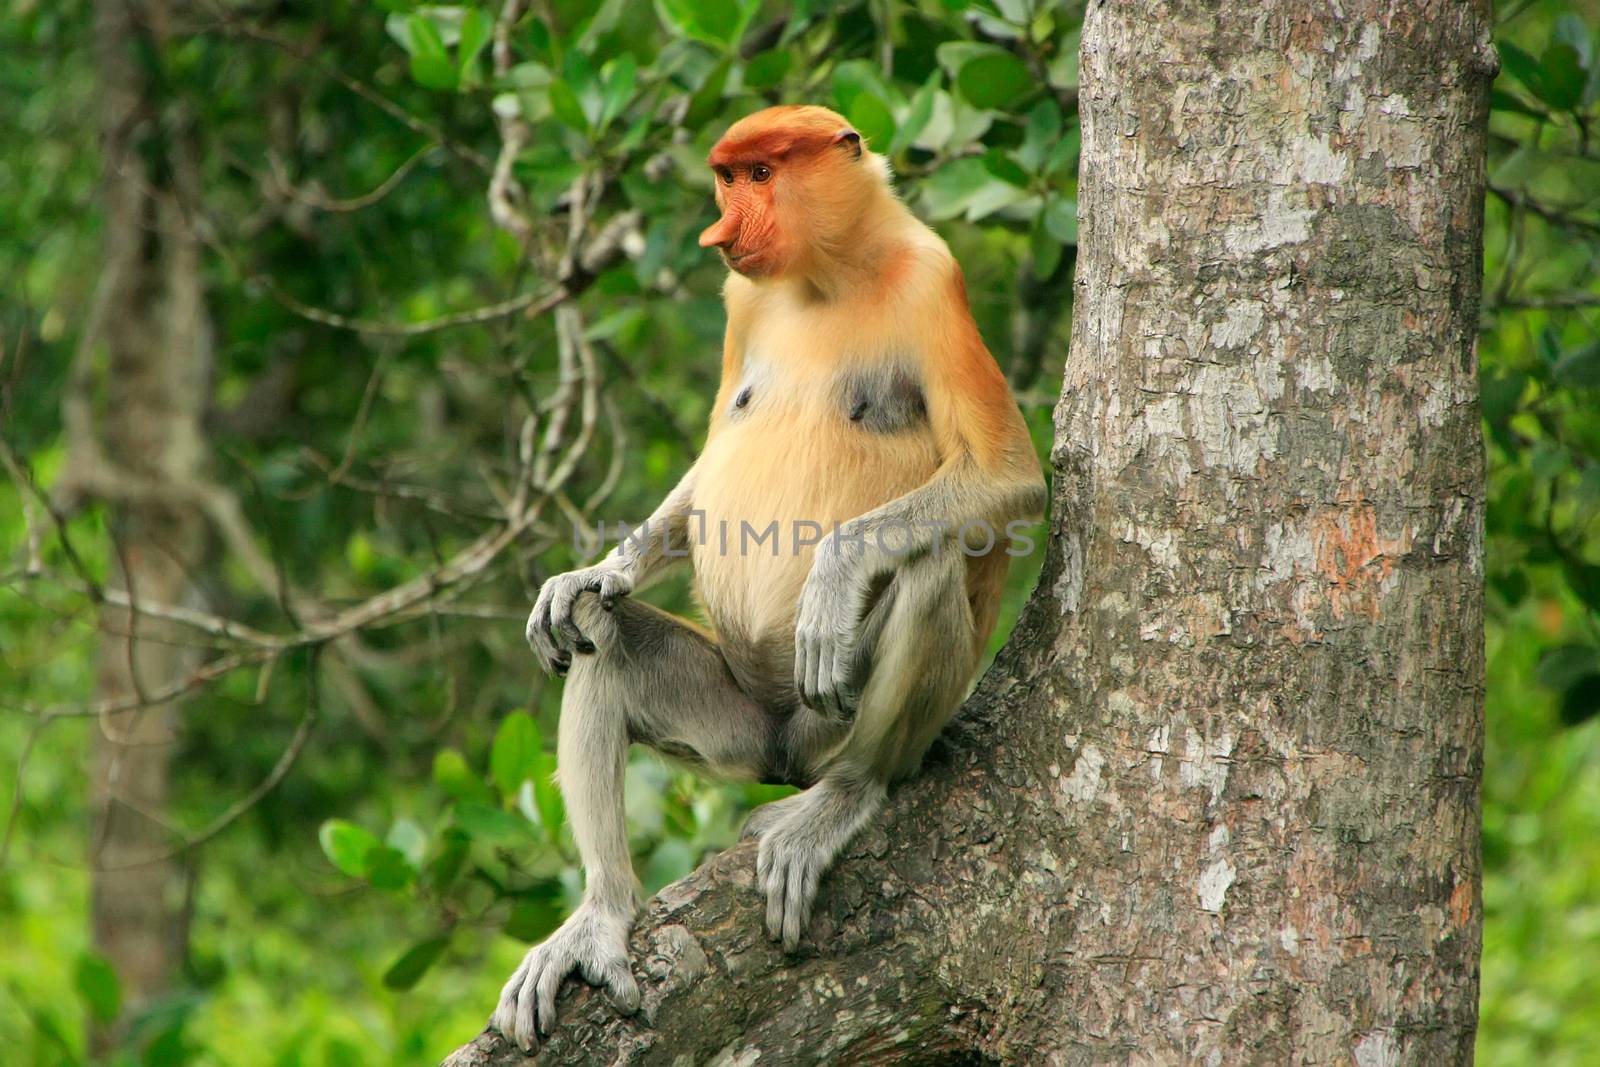 Proboscis monkey sitting on a tree, Borneo, Malaysia by donya_nedomam